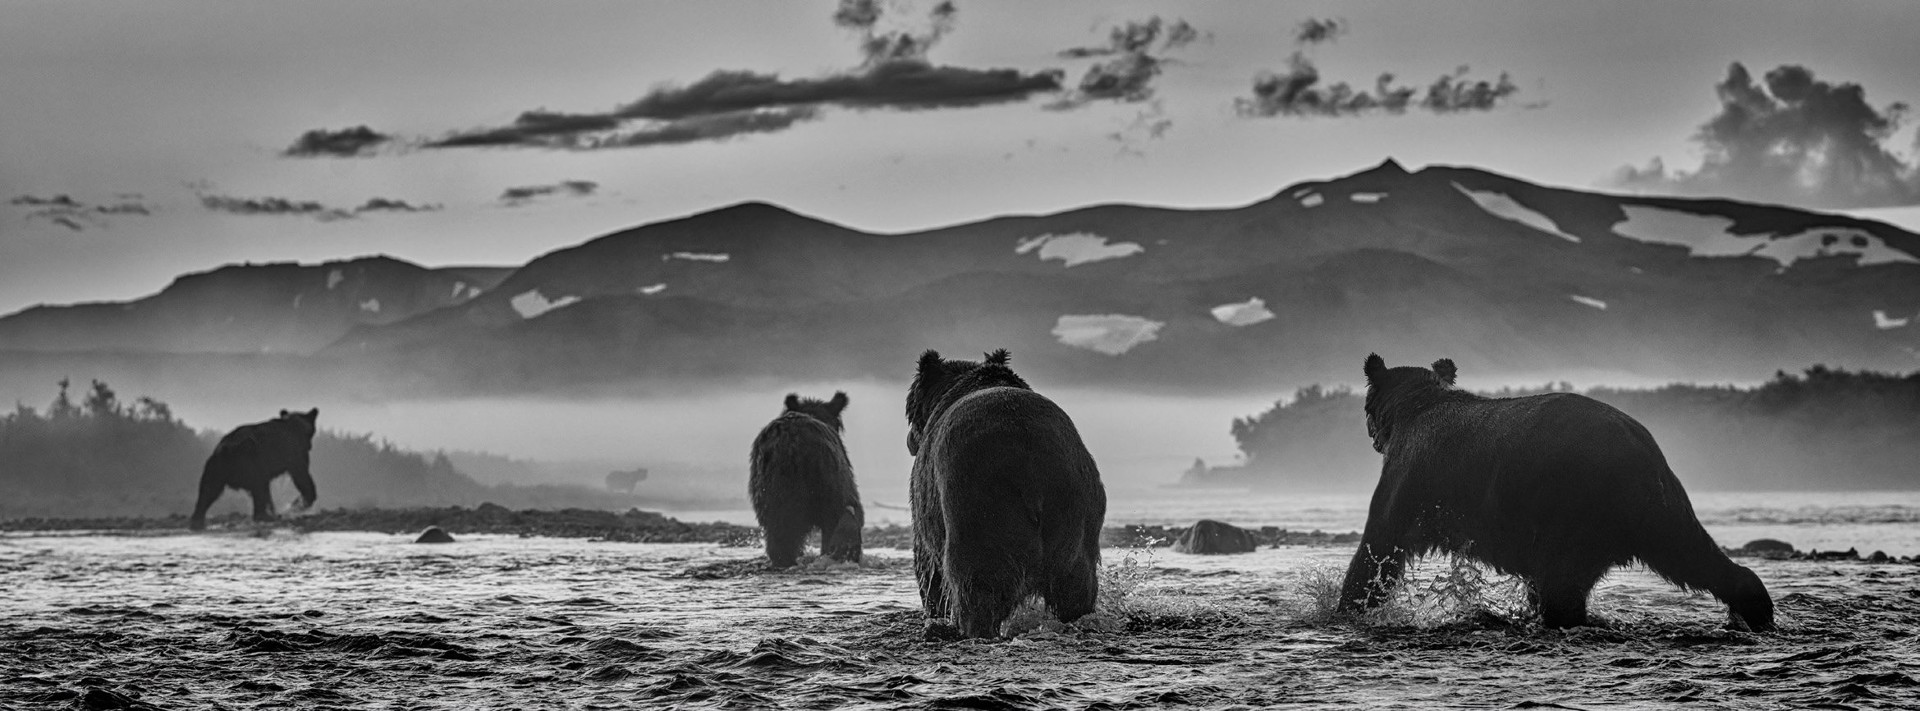 Bear Market by DAVID YARROW